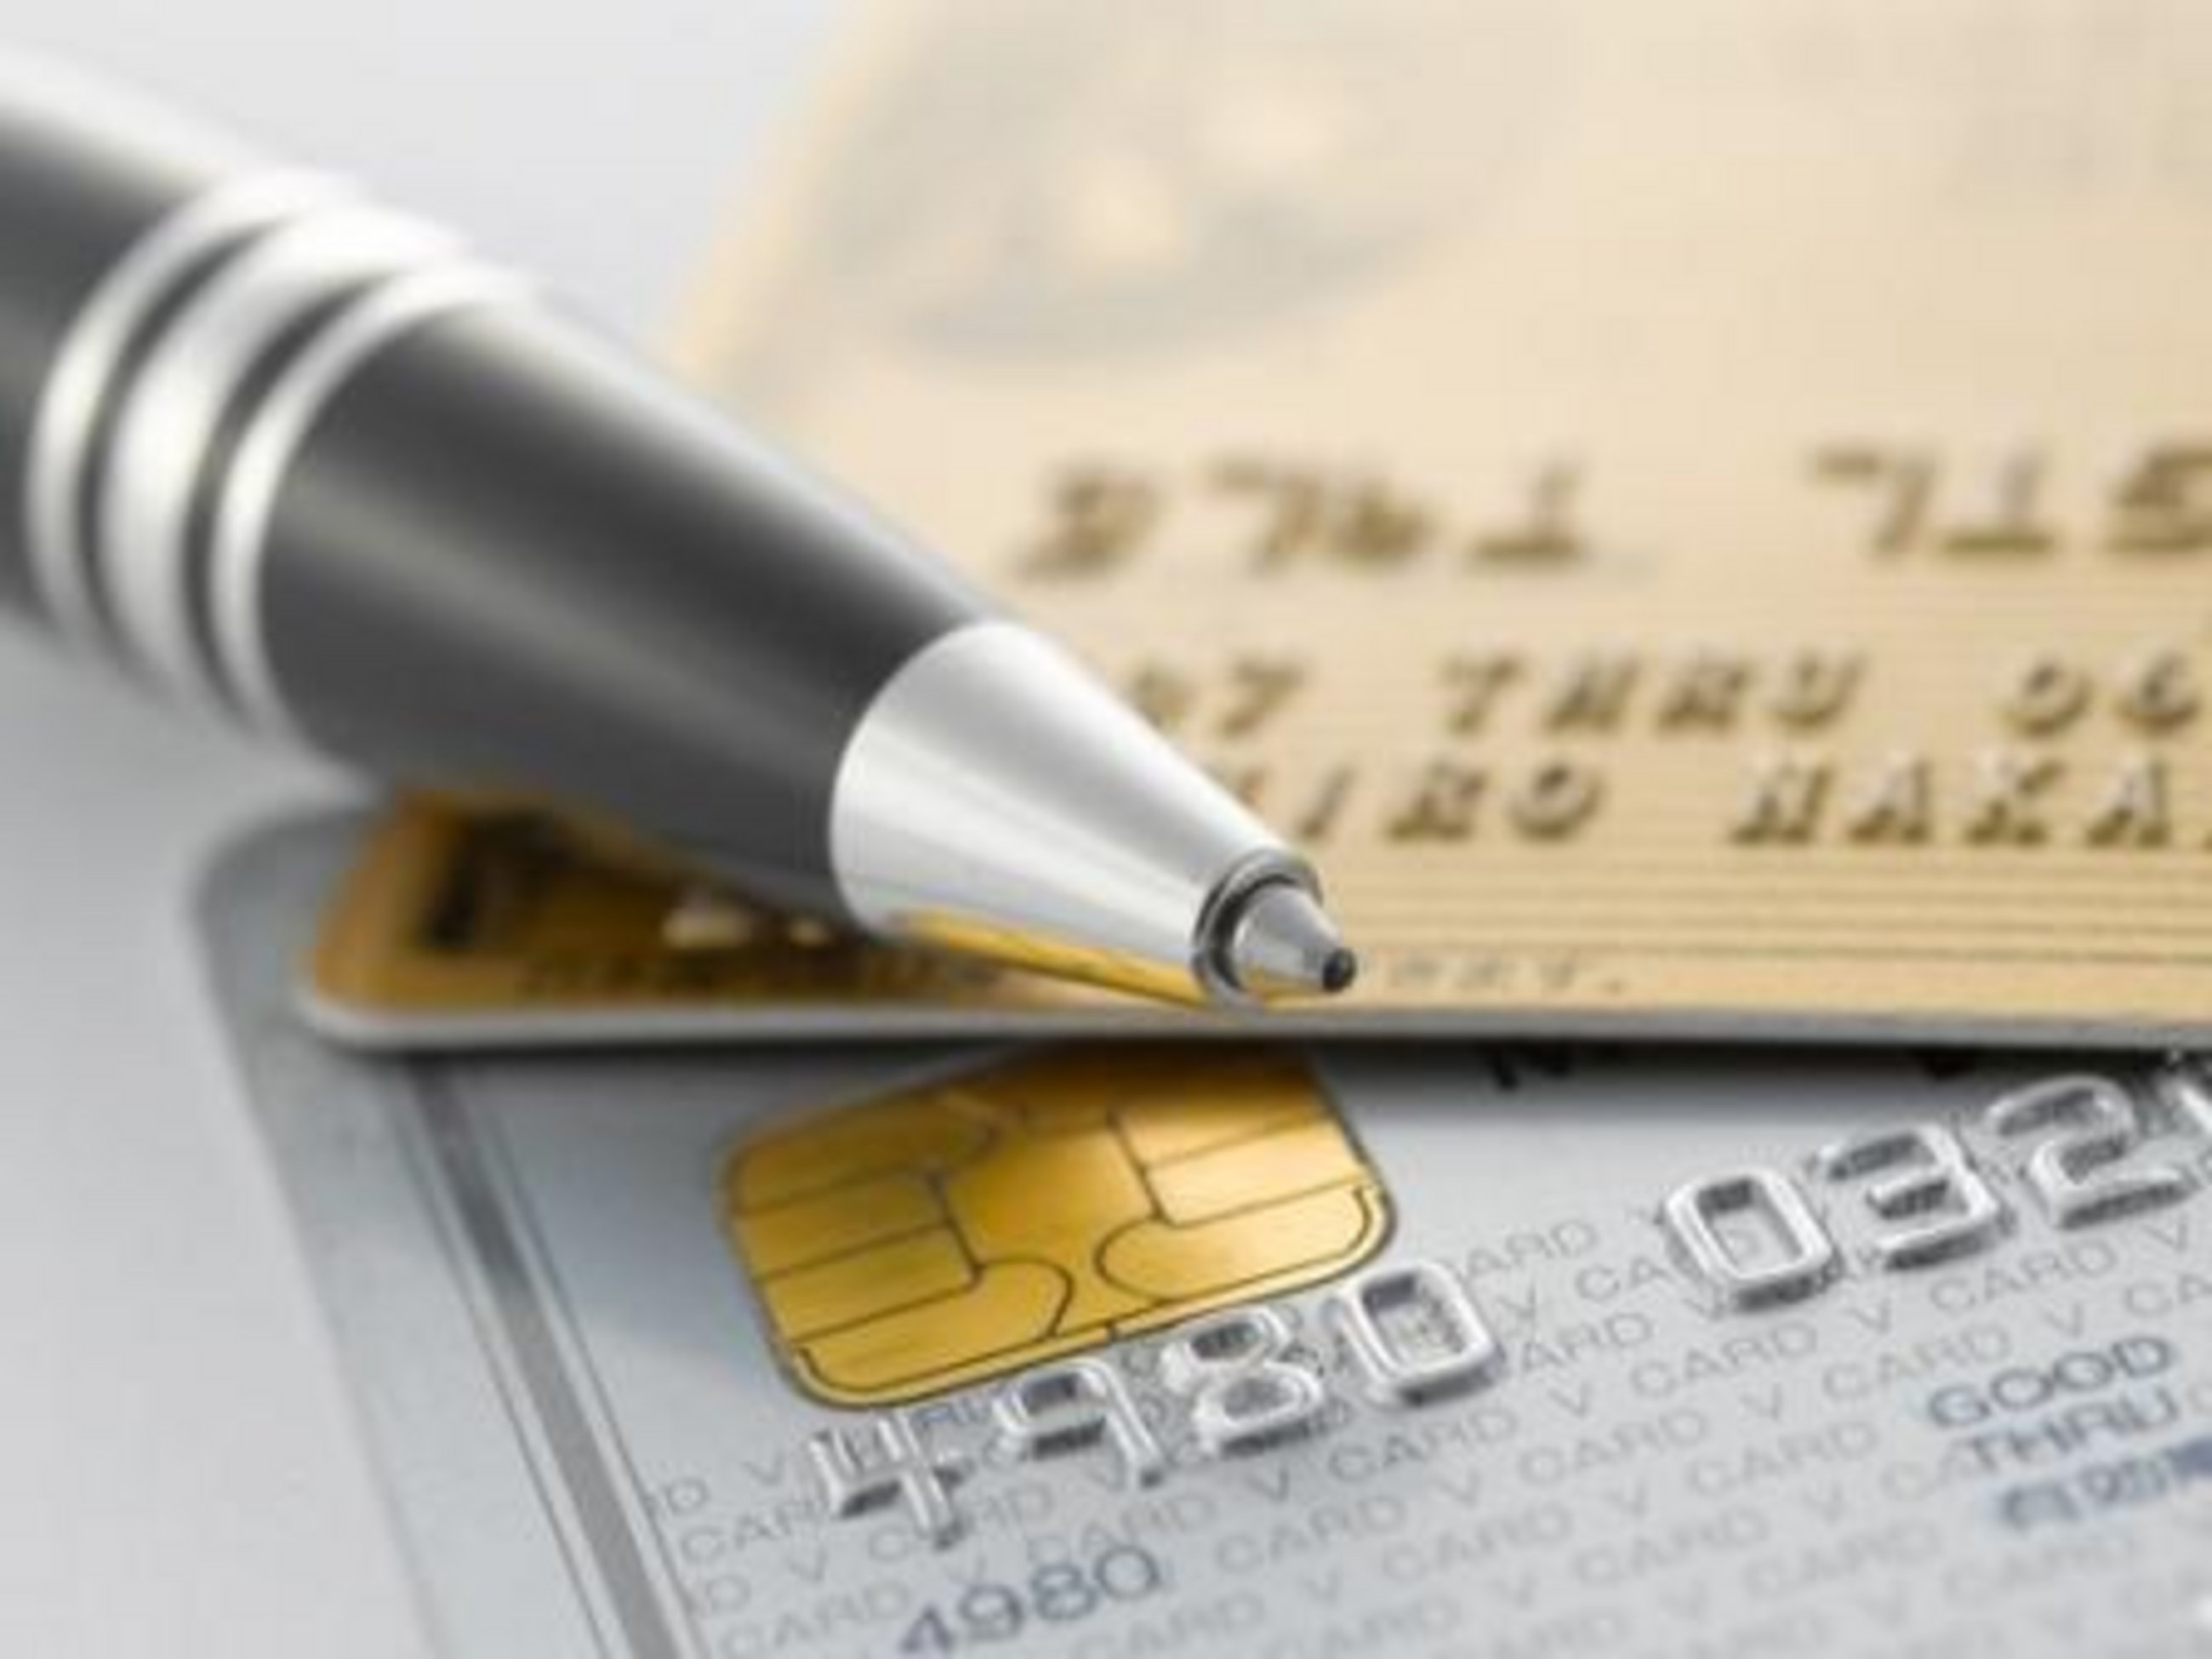 Regulierung des Kartenzahlungsmarktes (Verordnung)